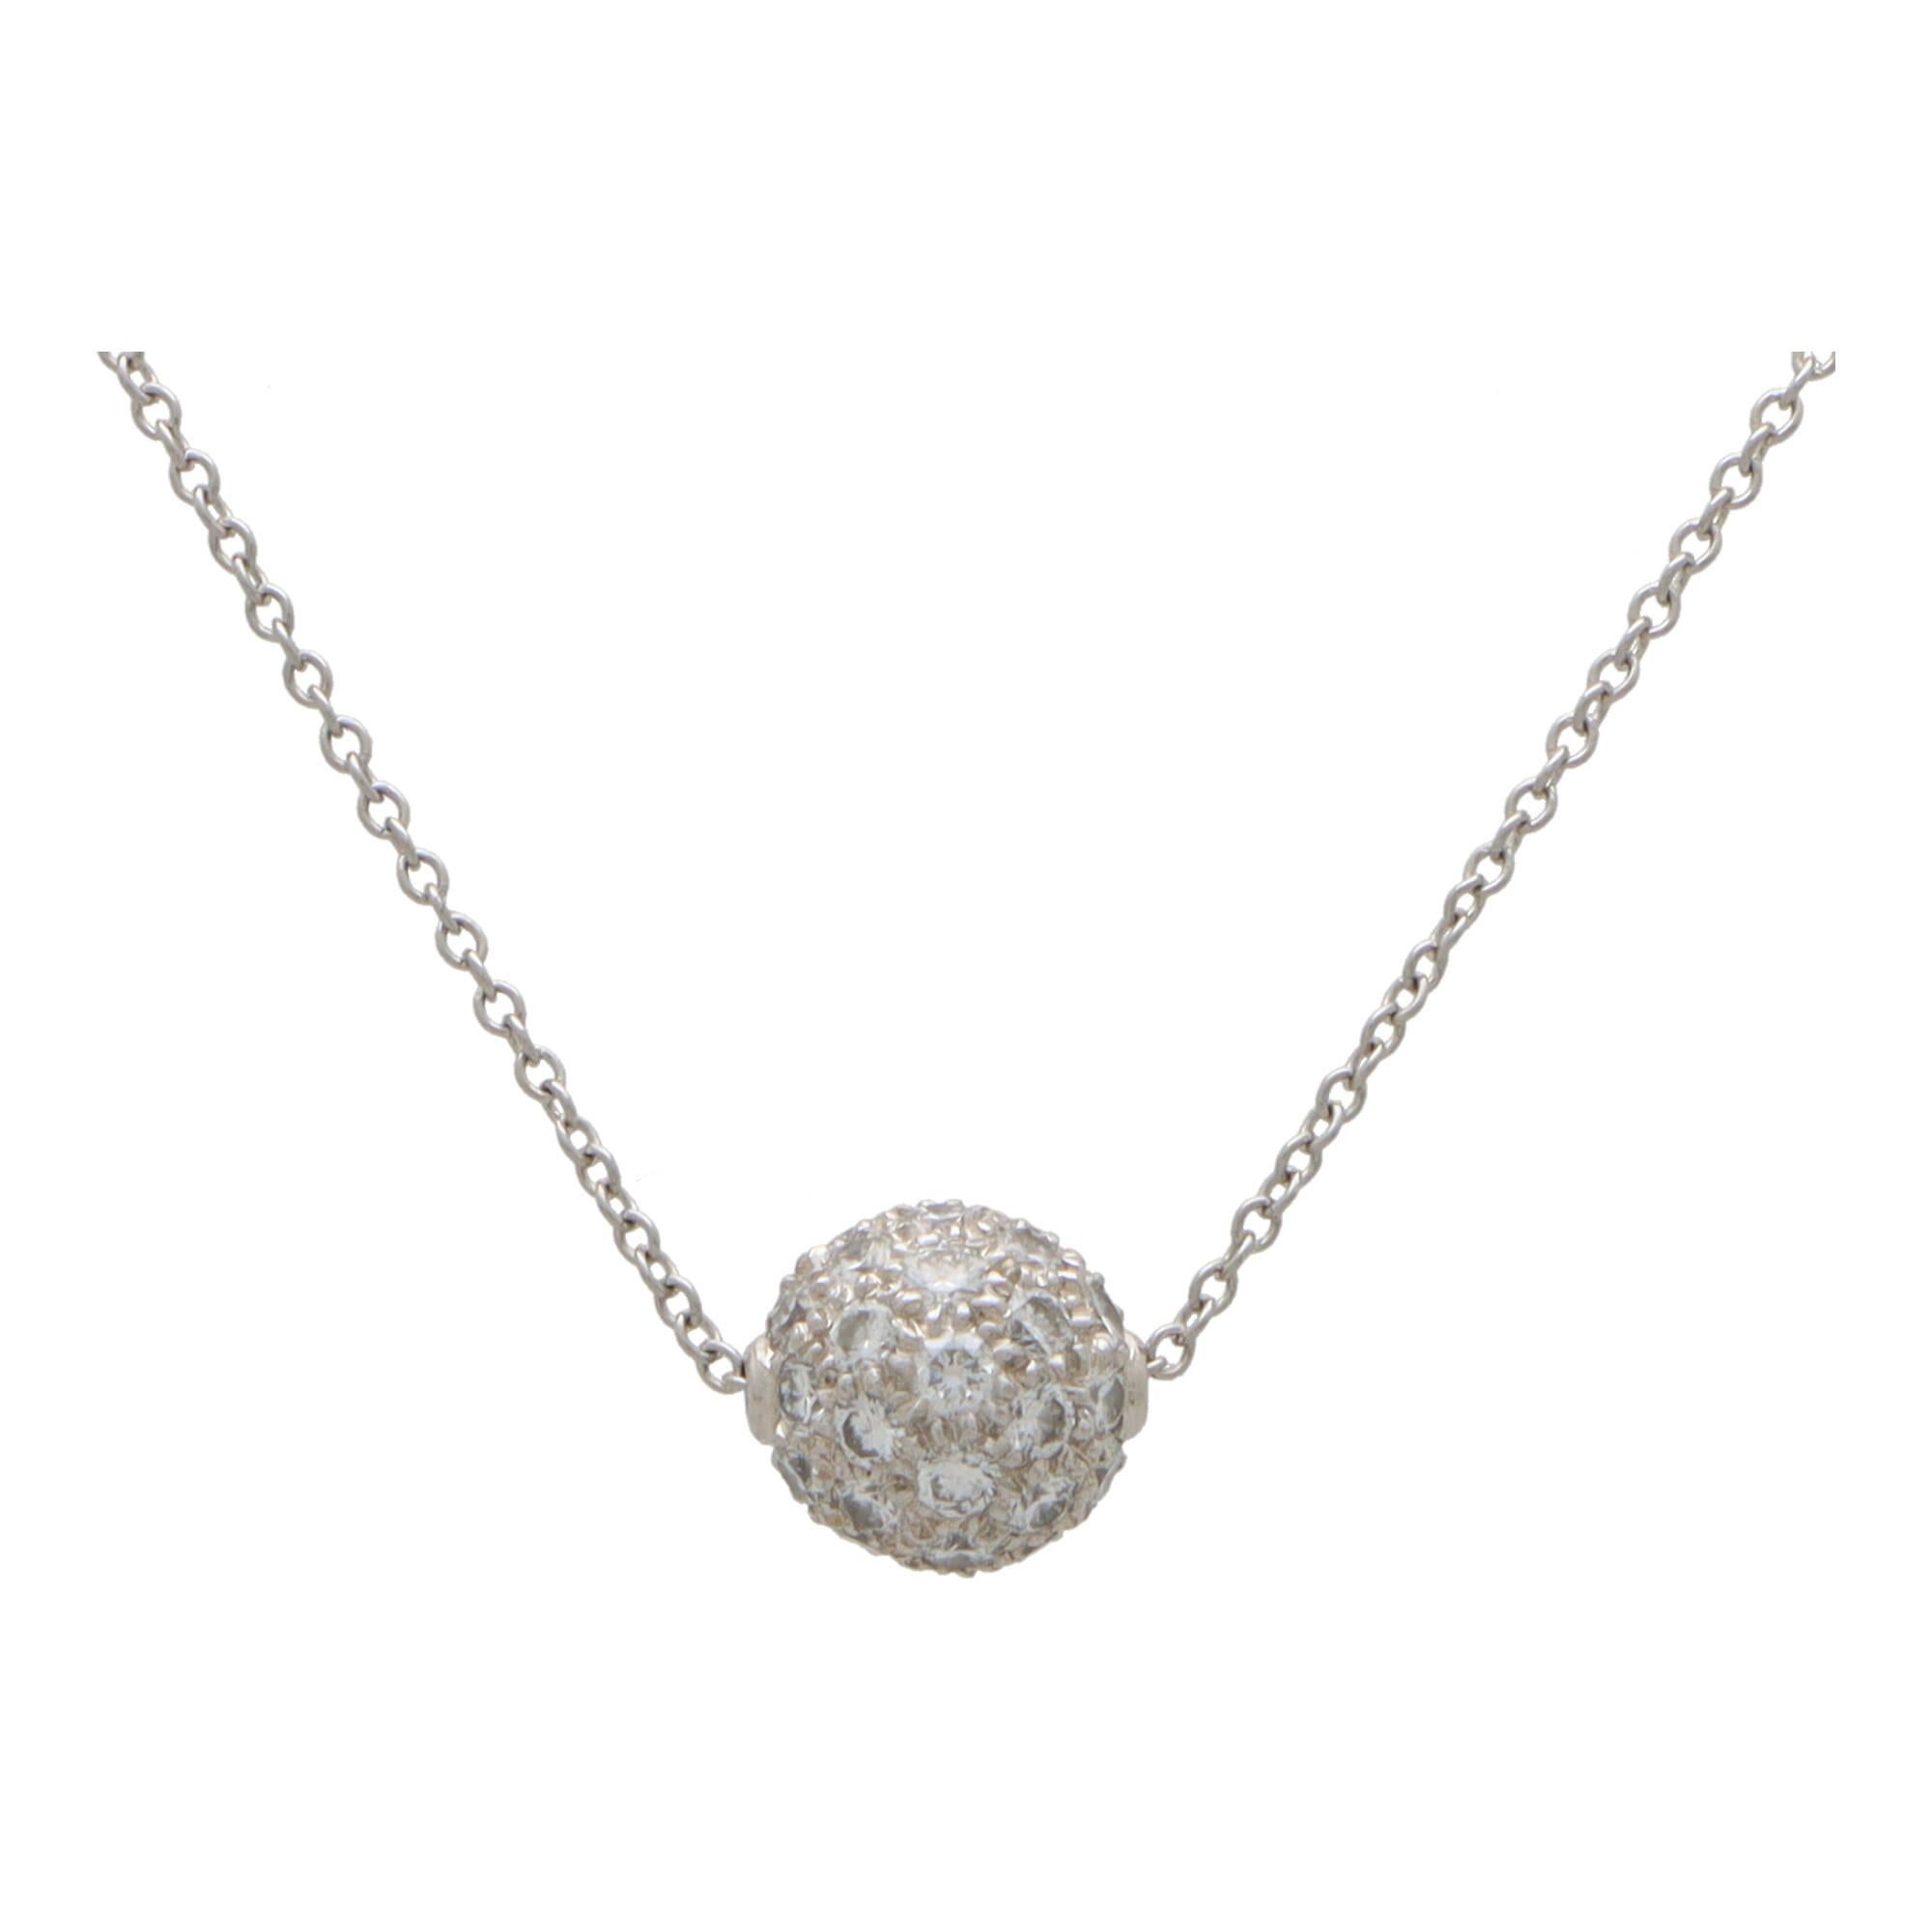 Un magnifique collier boule en diamant vintage de Tiffany & Co. serti en platine. 

Le pendentif est composé d'une boule en platine massif entièrement pavée de 42 diamants ronds de taille brillant. La boule est suspendue à une chaîne de 16 pouces en